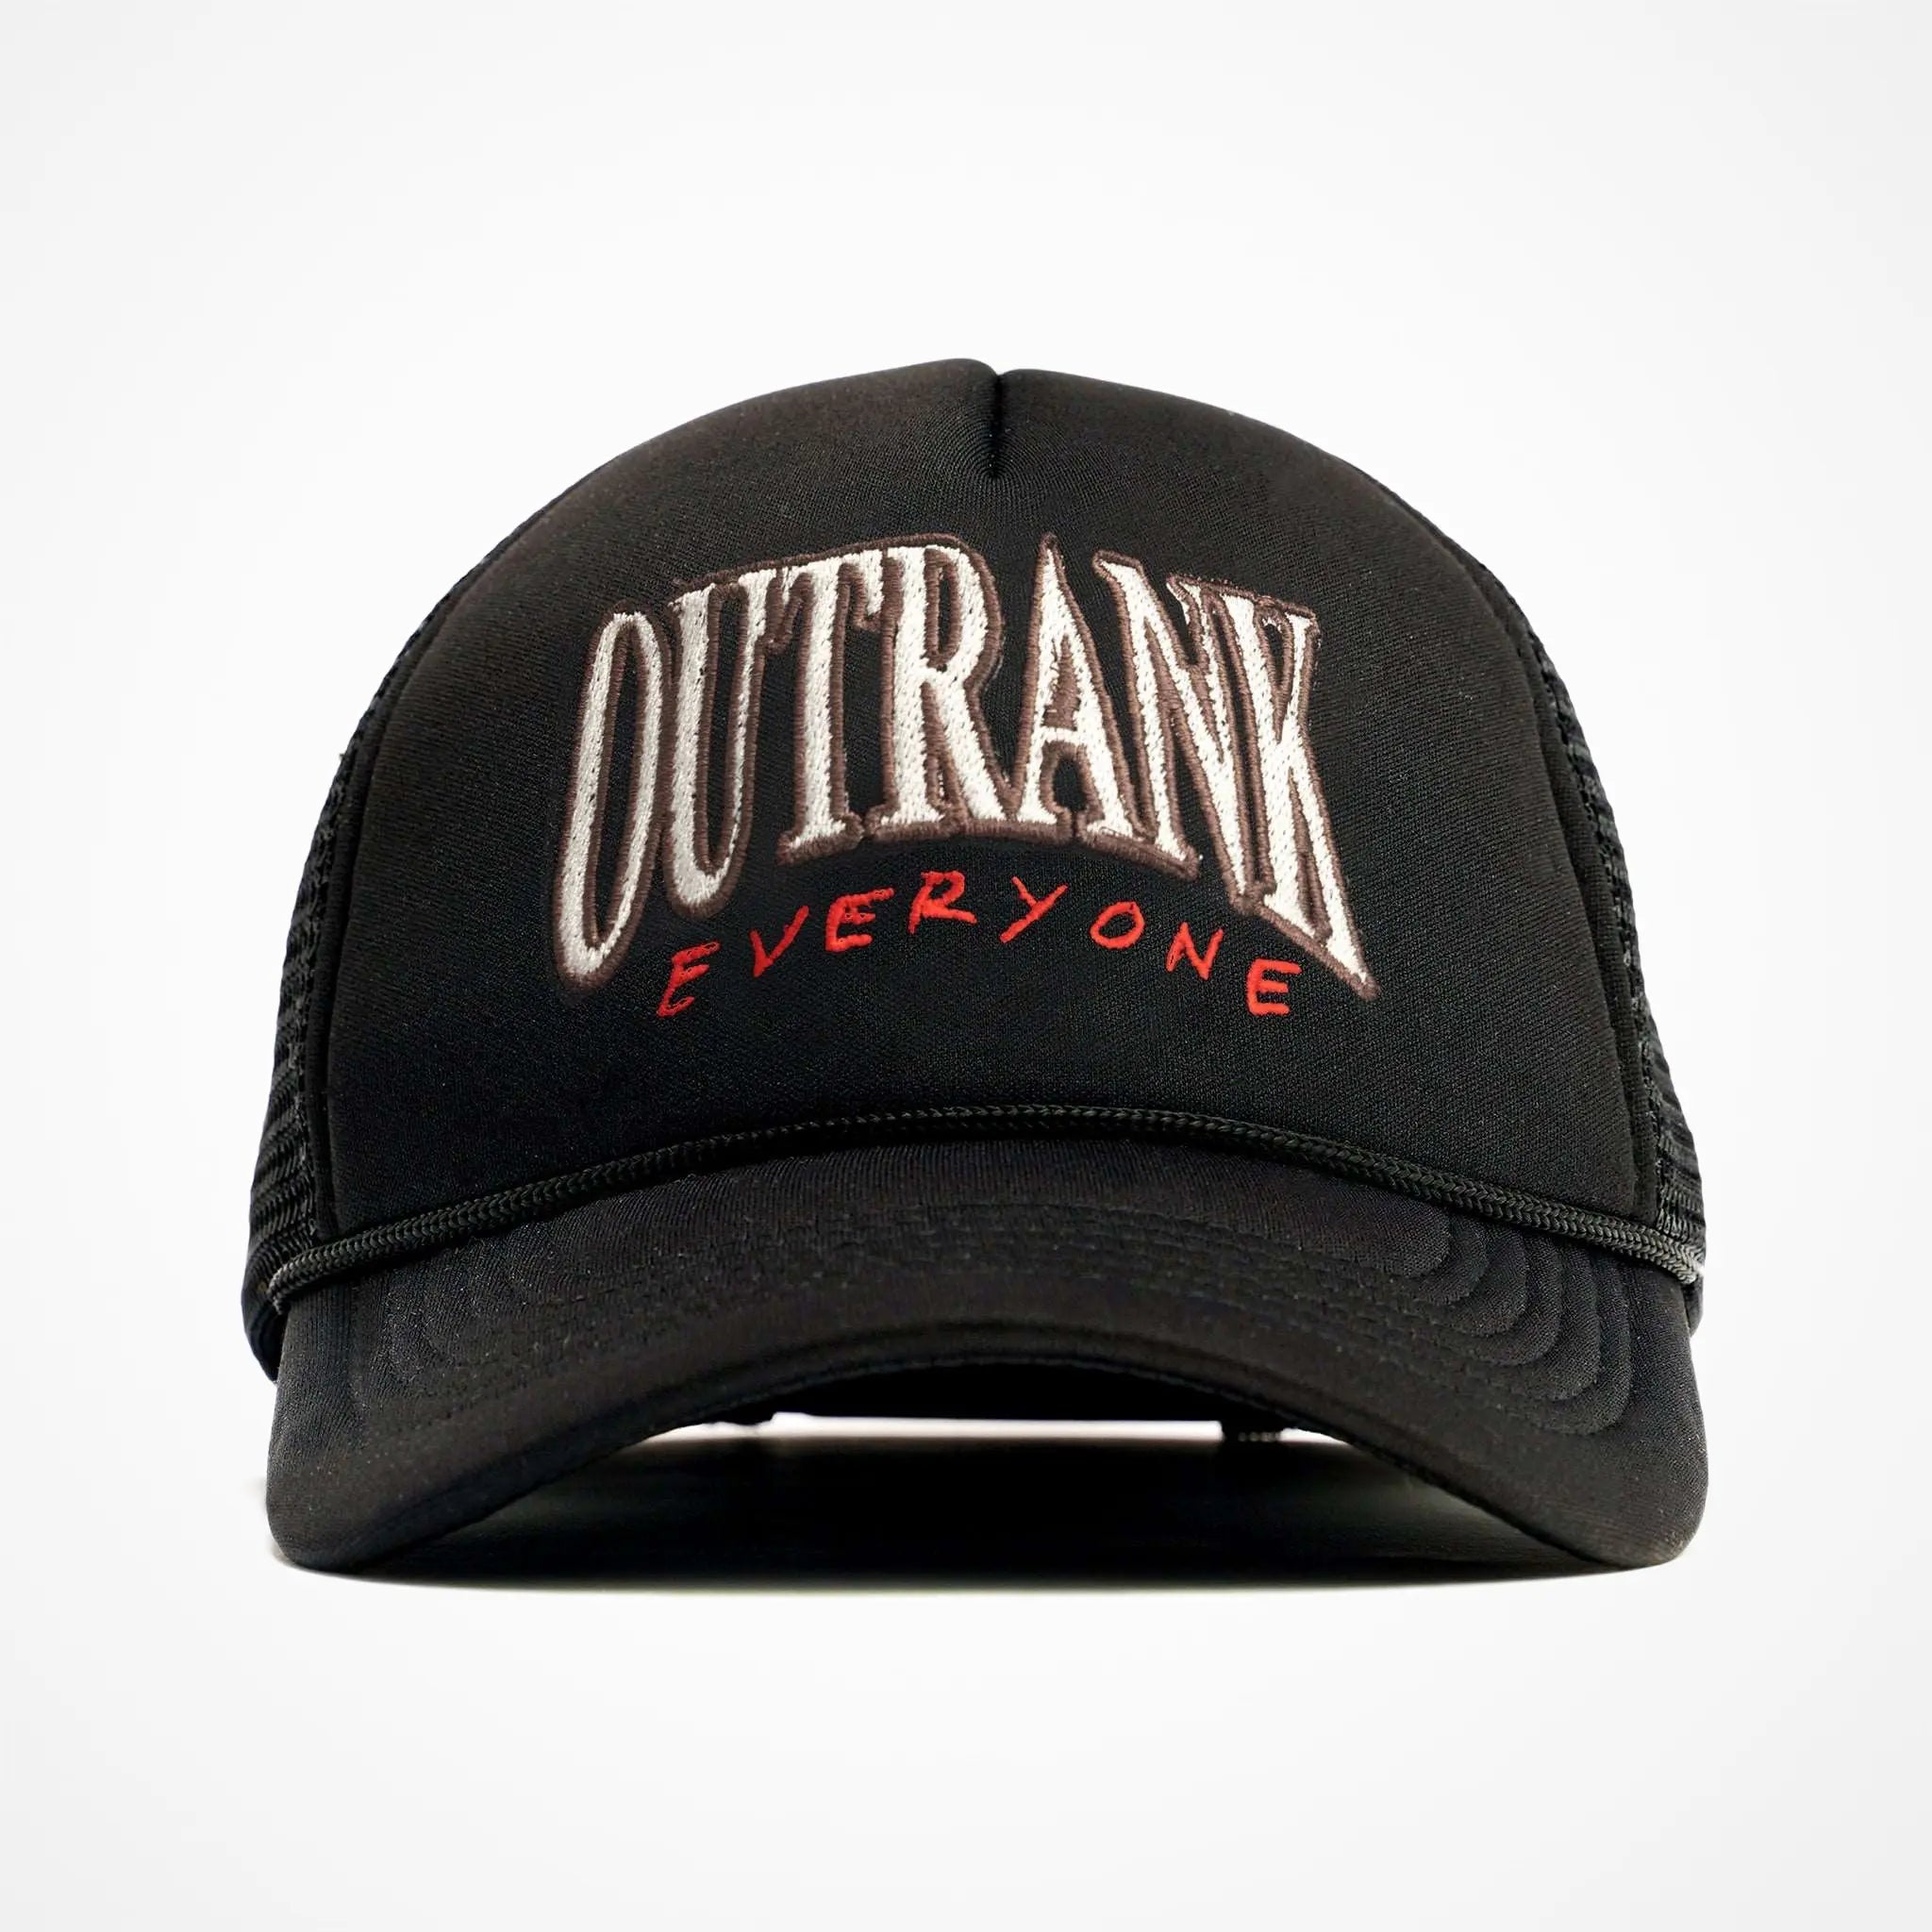 Outrank Everyone Foam Trucker Hat - Outrank